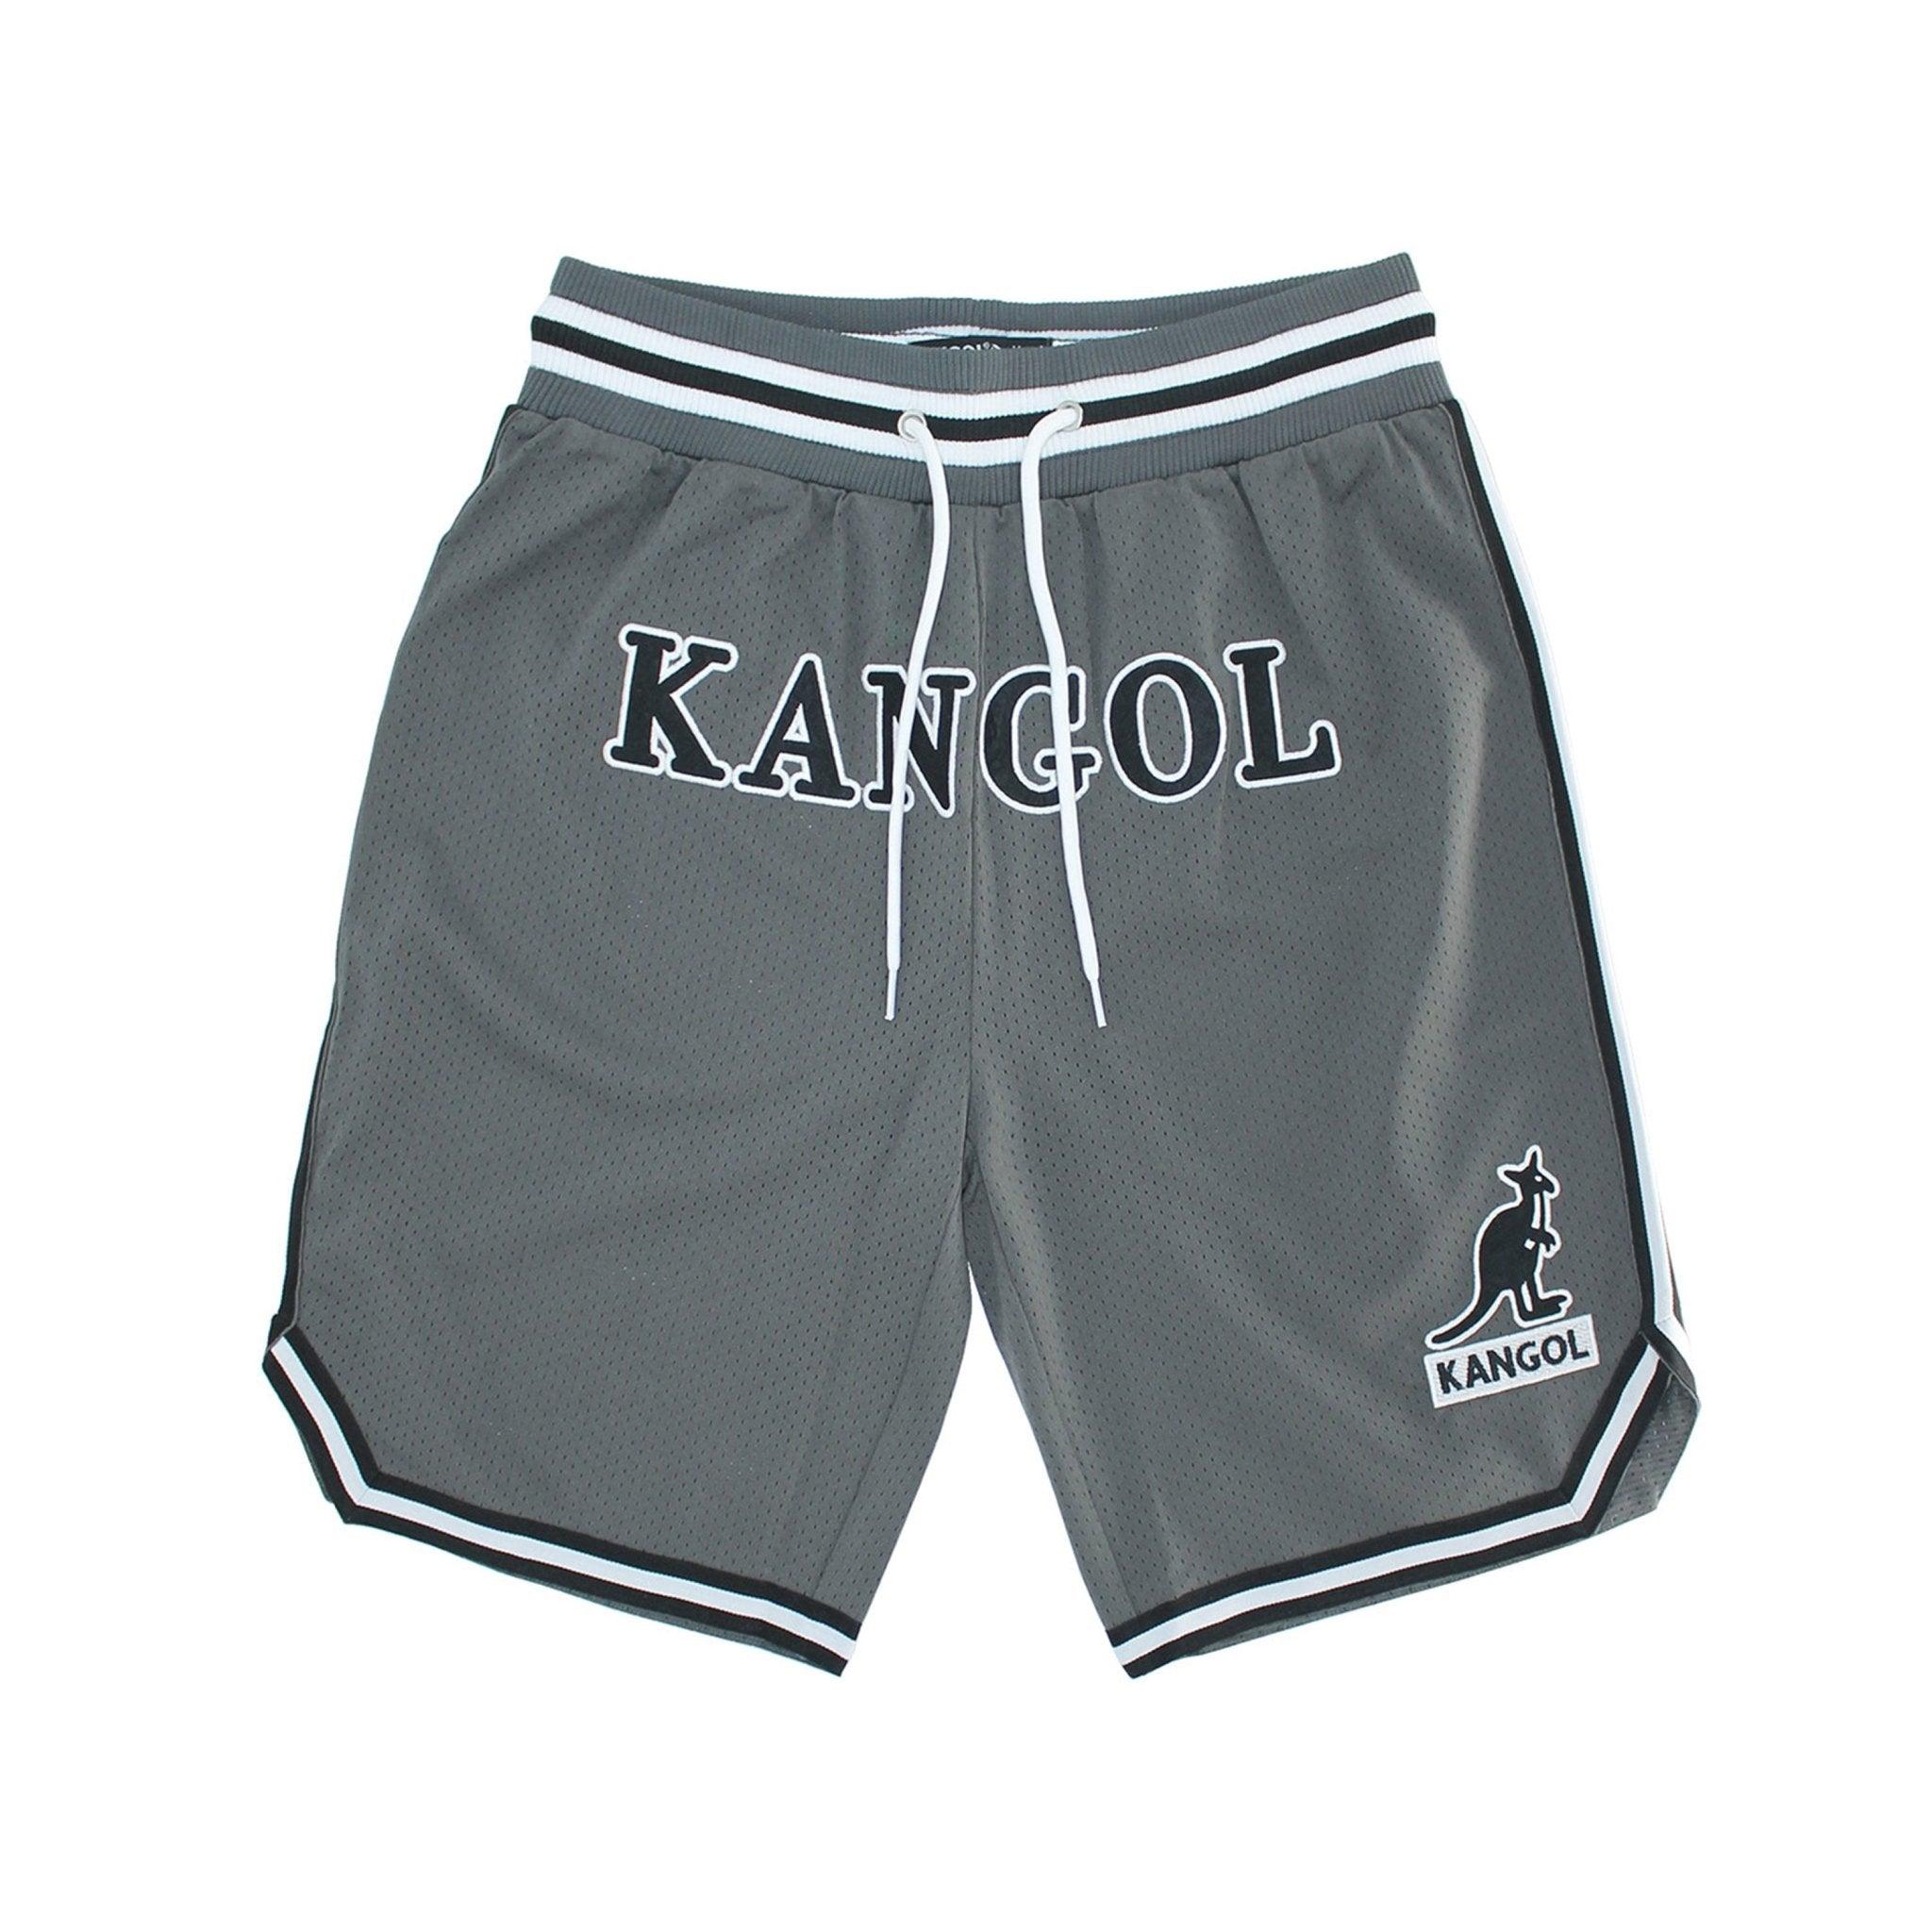 Kangol Game Day Mesh Basketball Shorts - Fashion Hub Club